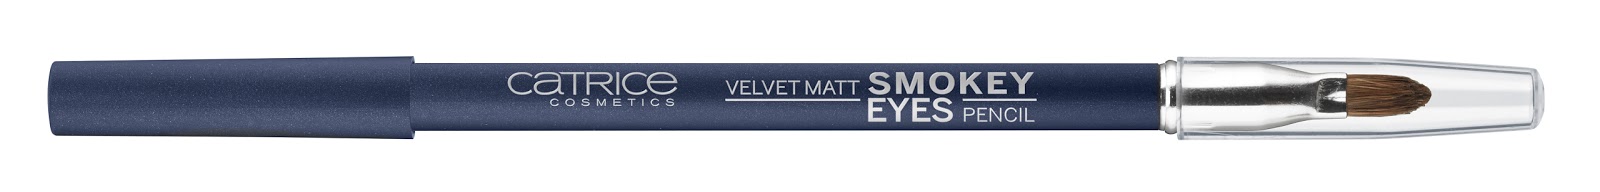 Catrice - Velvet Matt Smokey Eyes Pencil